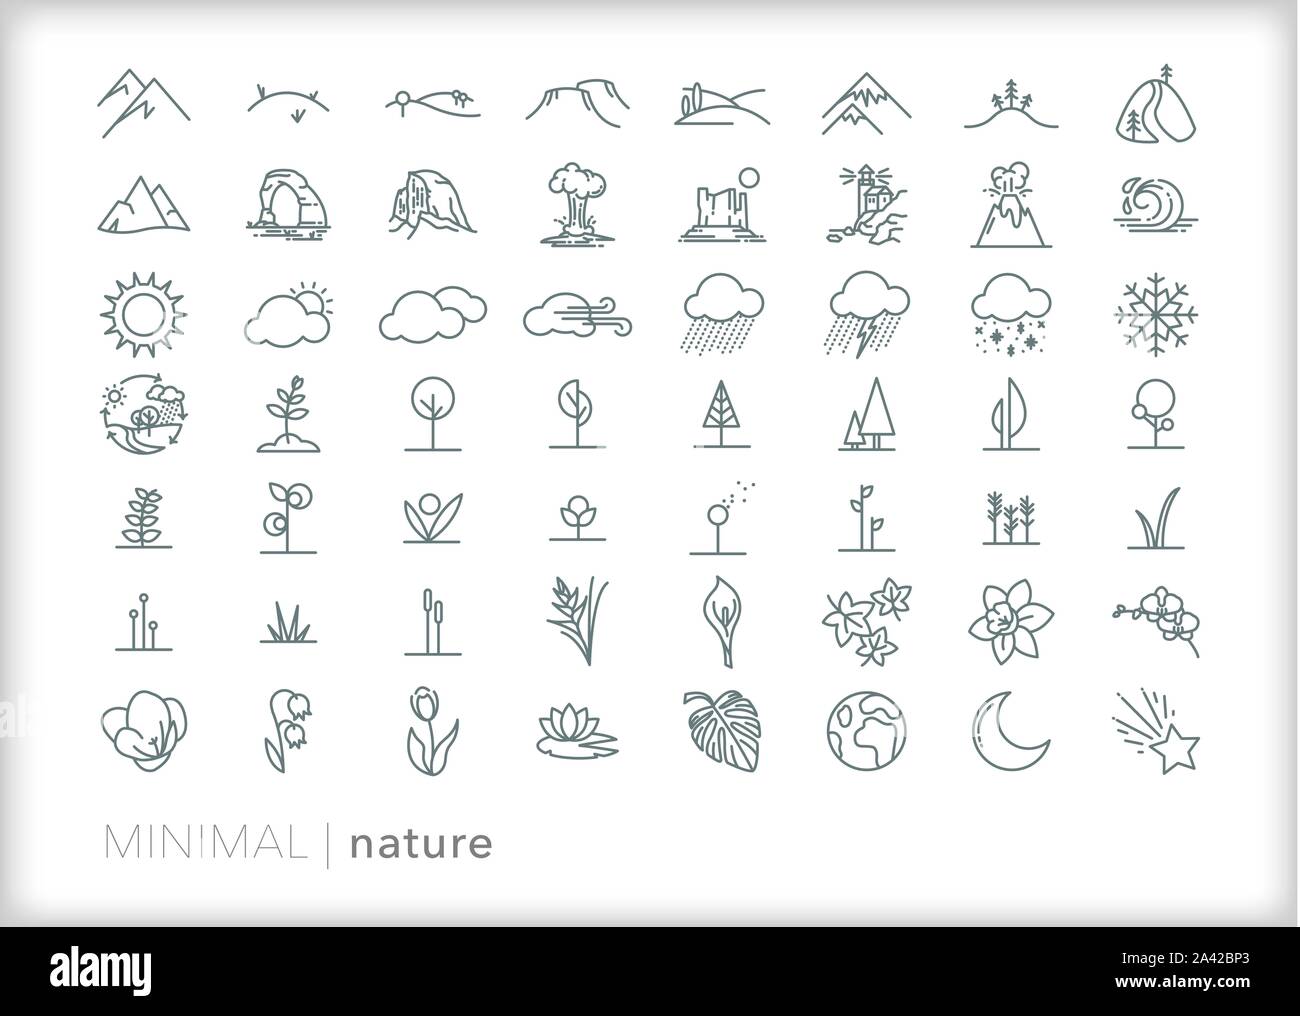 Satz mit 50+ Natur Zeile für Symbole von Pflanzen, Bäume, Blumen, Wetter, Landschaften, Berge und Nationalparks Websites Stock Vektor